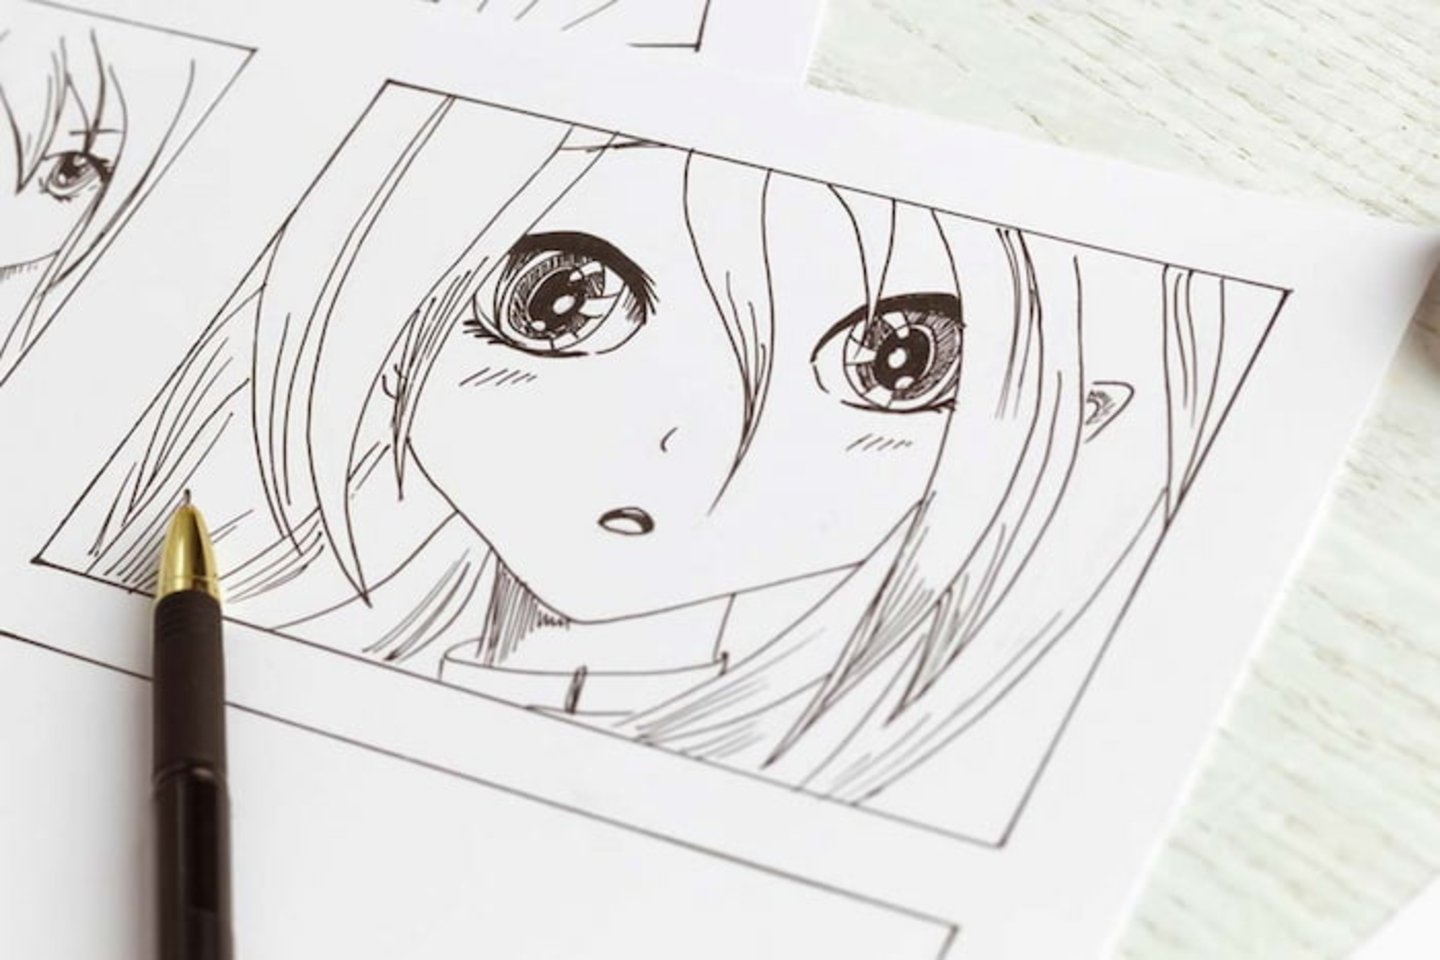 Recursos Gratuitos para Aprender a Dibujar Manga / Anime